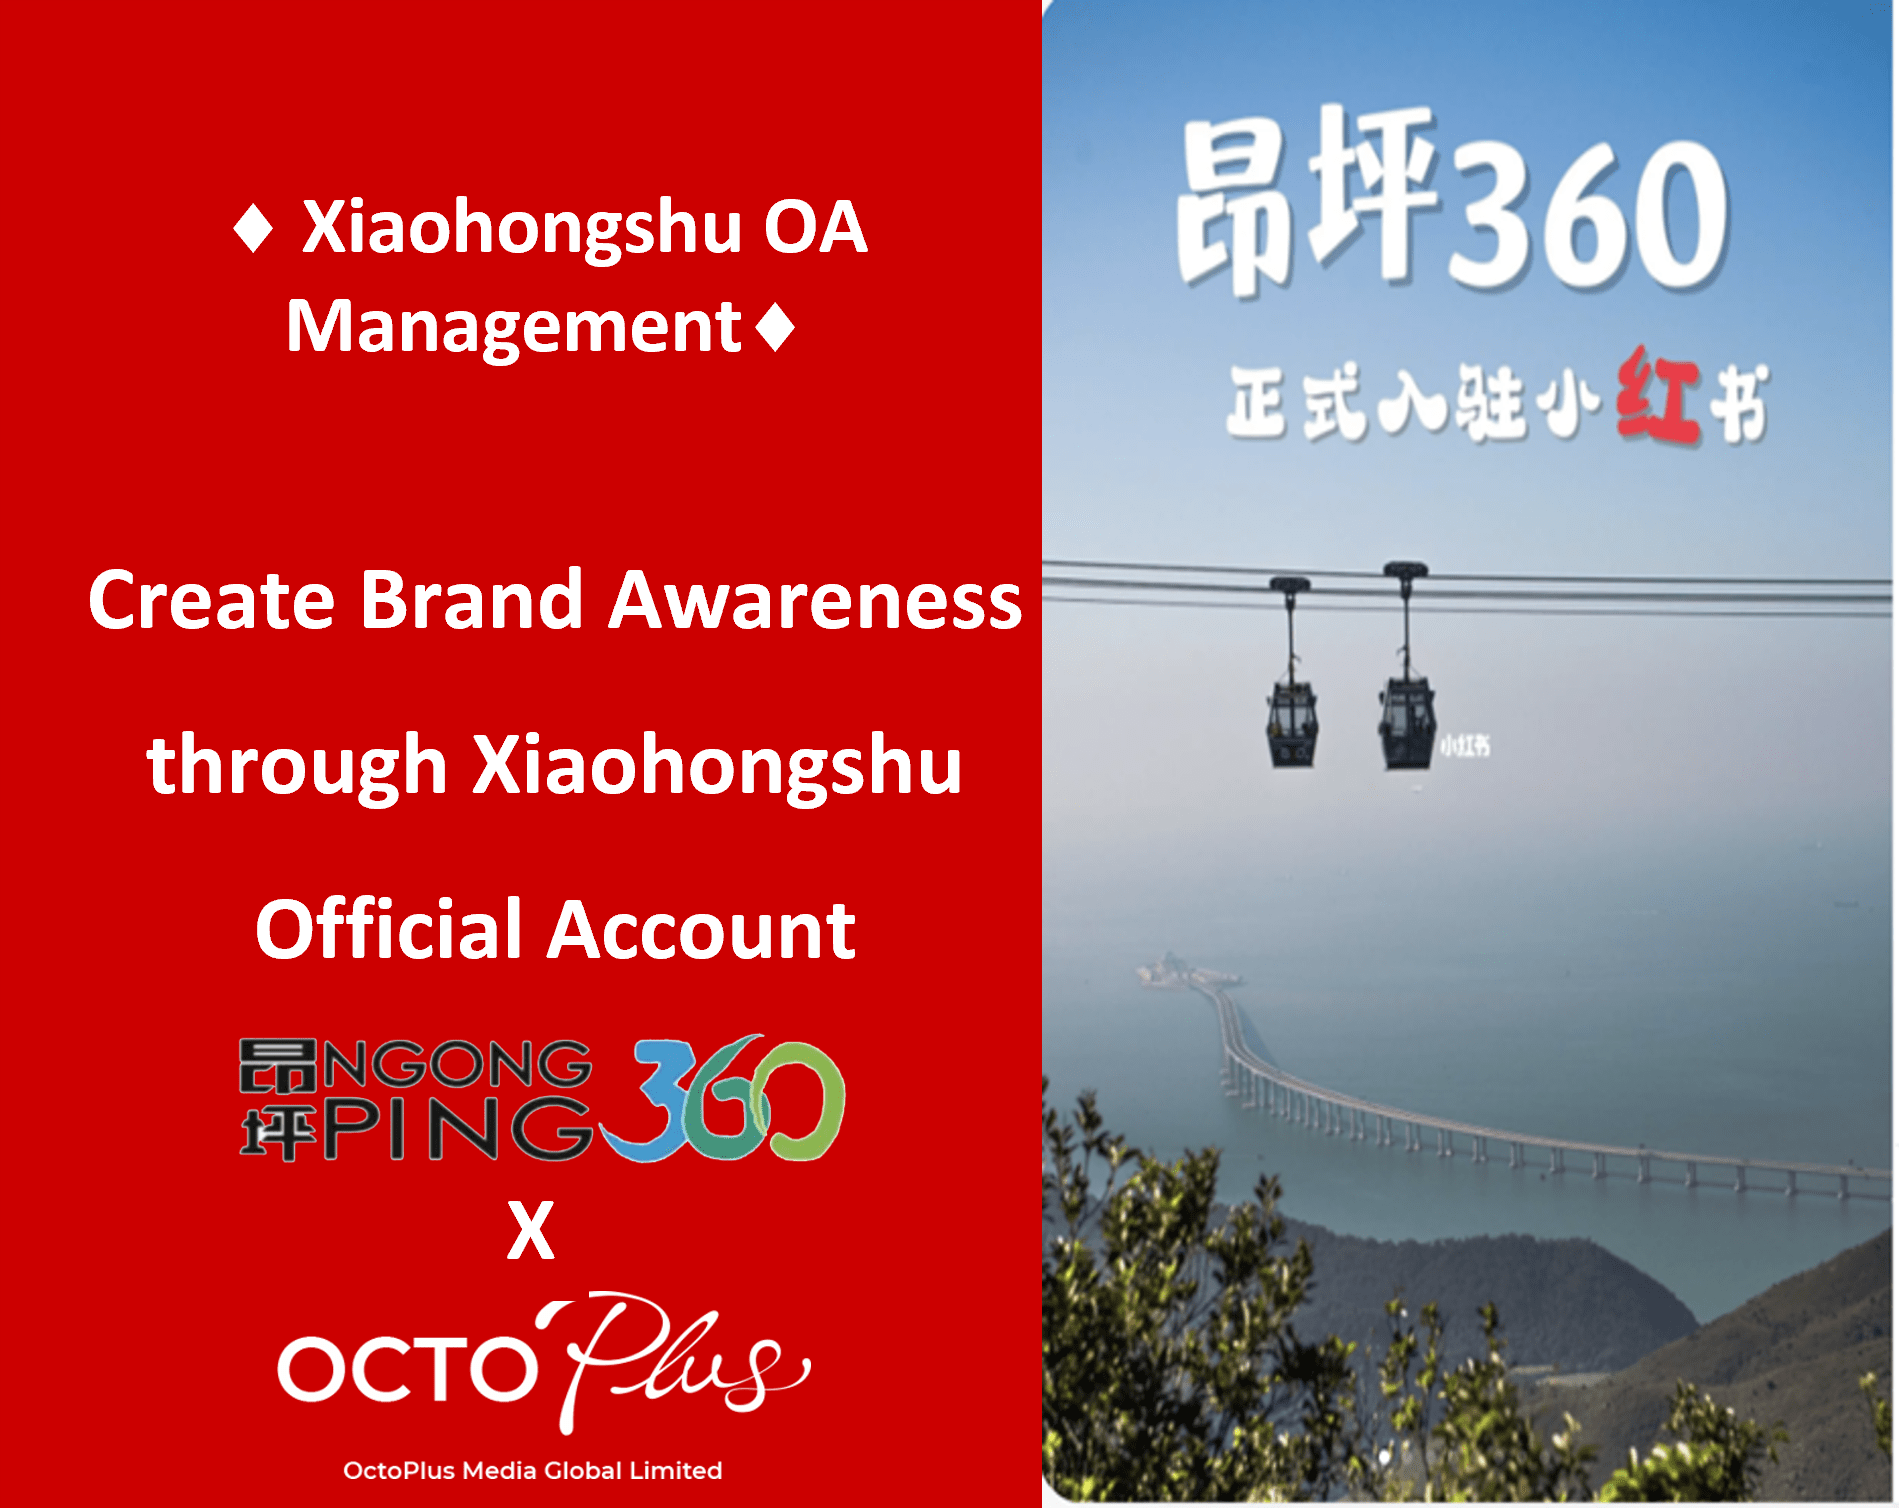 Xiaohongshu OA Management - NP360